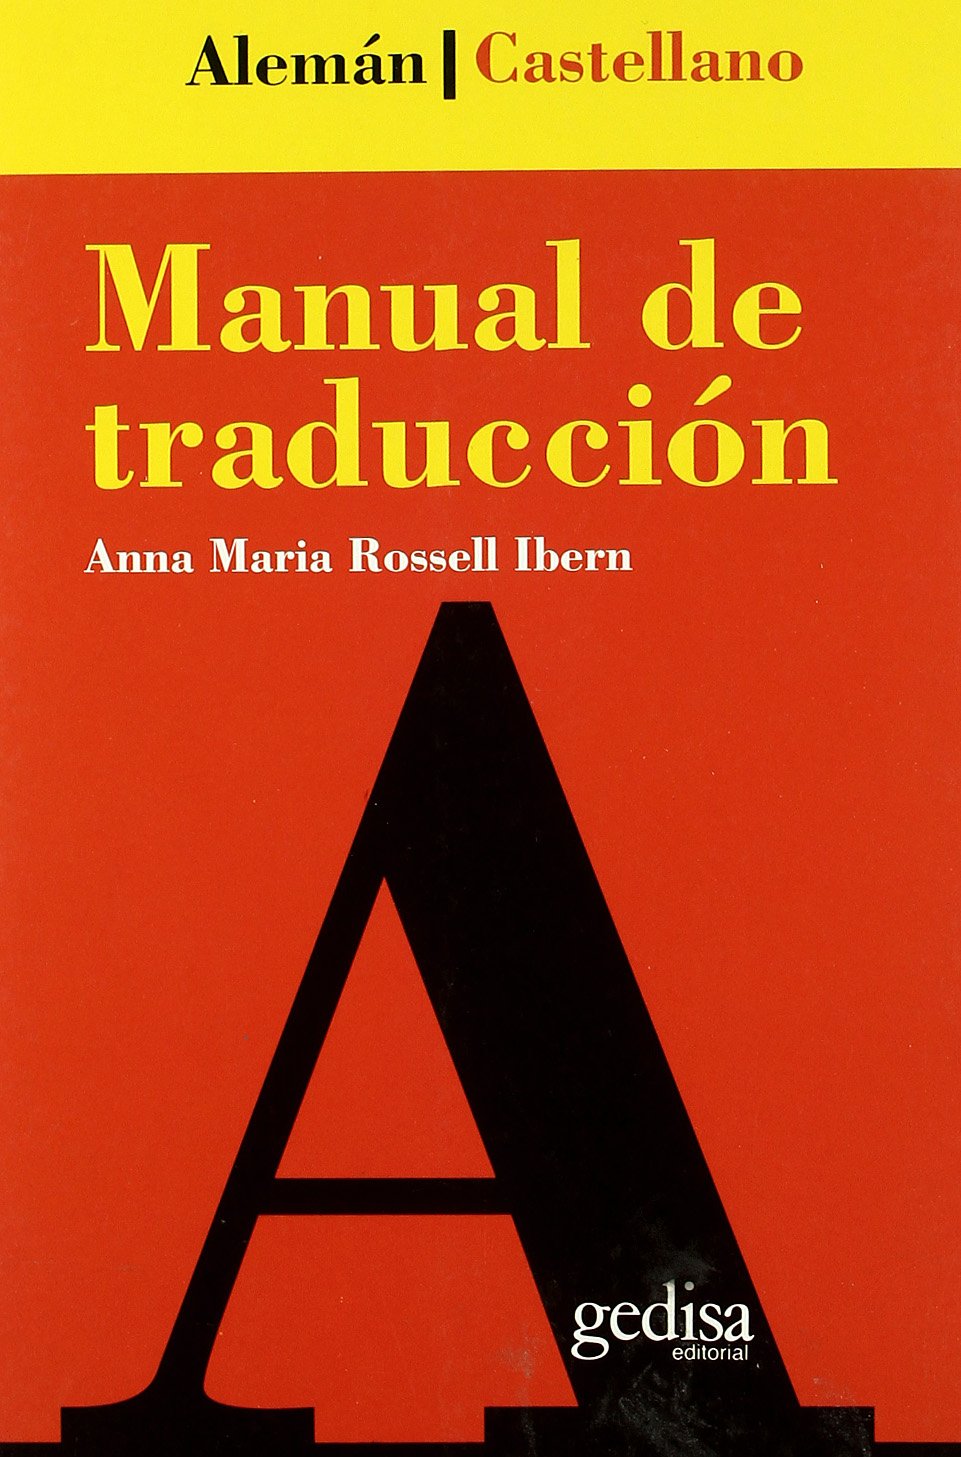 Portada del libro «Manual de traducción (alemán-castellano)», de la escritora y filóloga alemana Anna Rossell